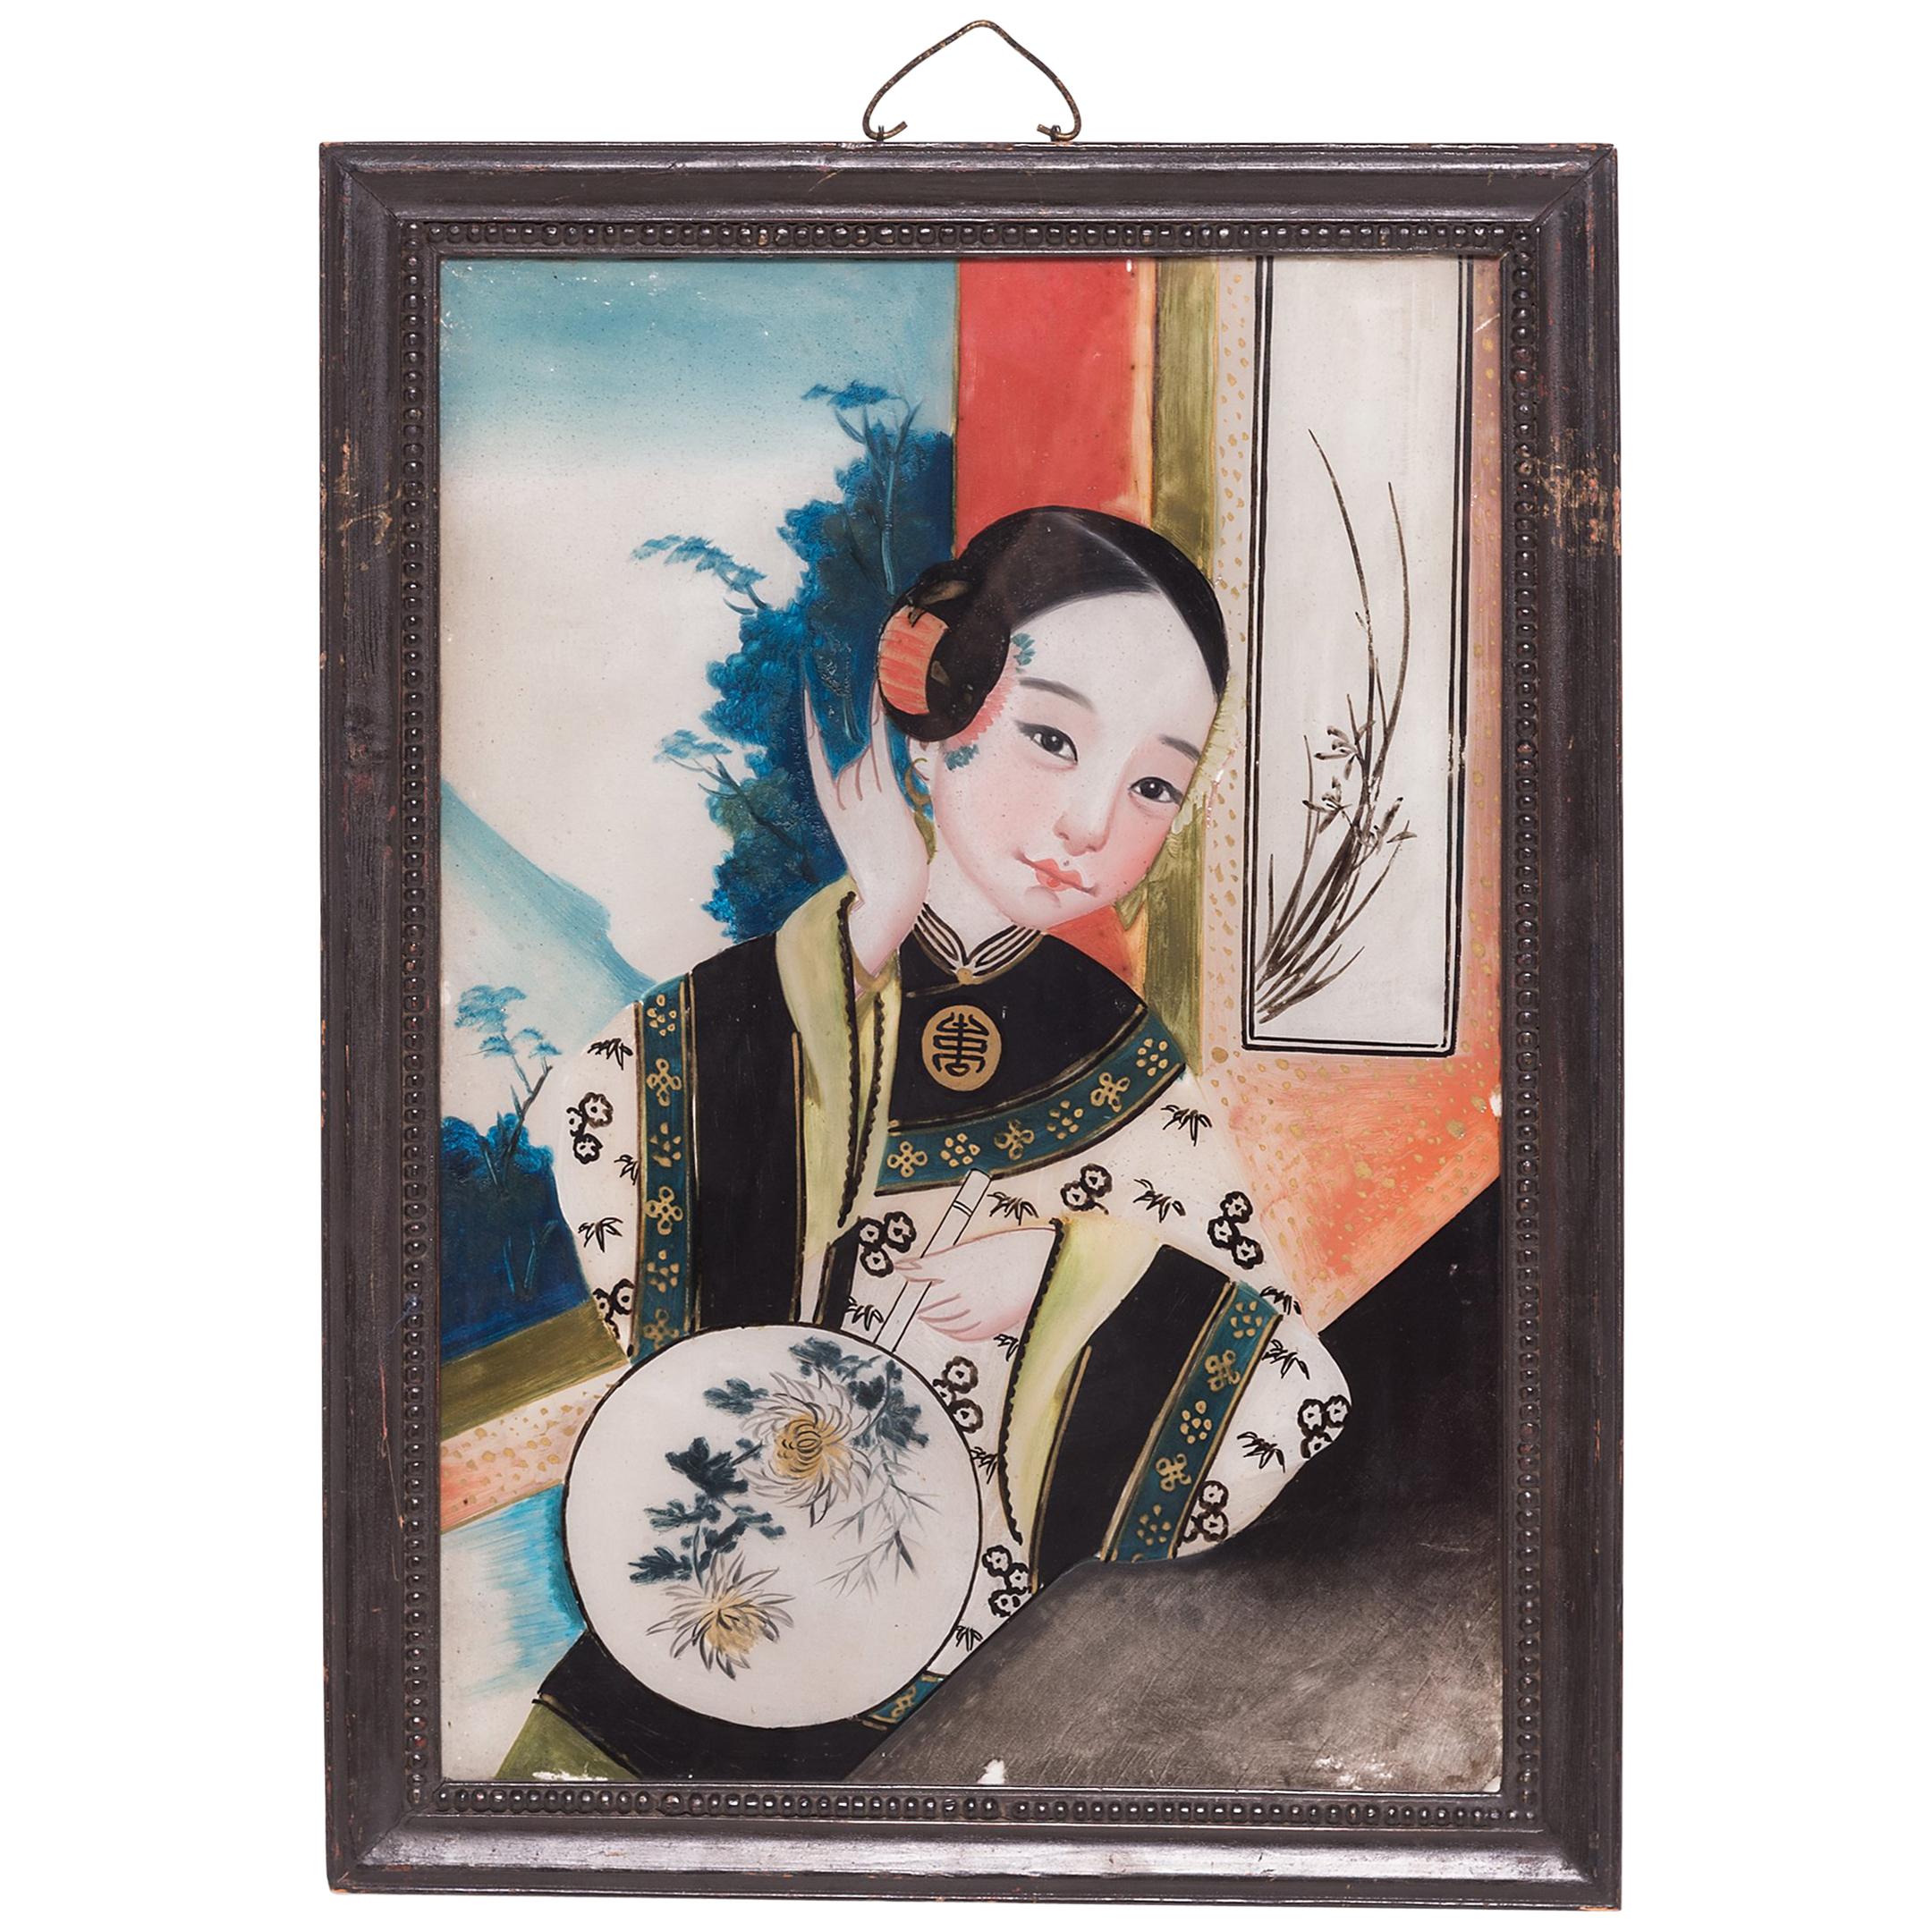 Portrait chinois en verre inversé avec éventail peint, vers 1900